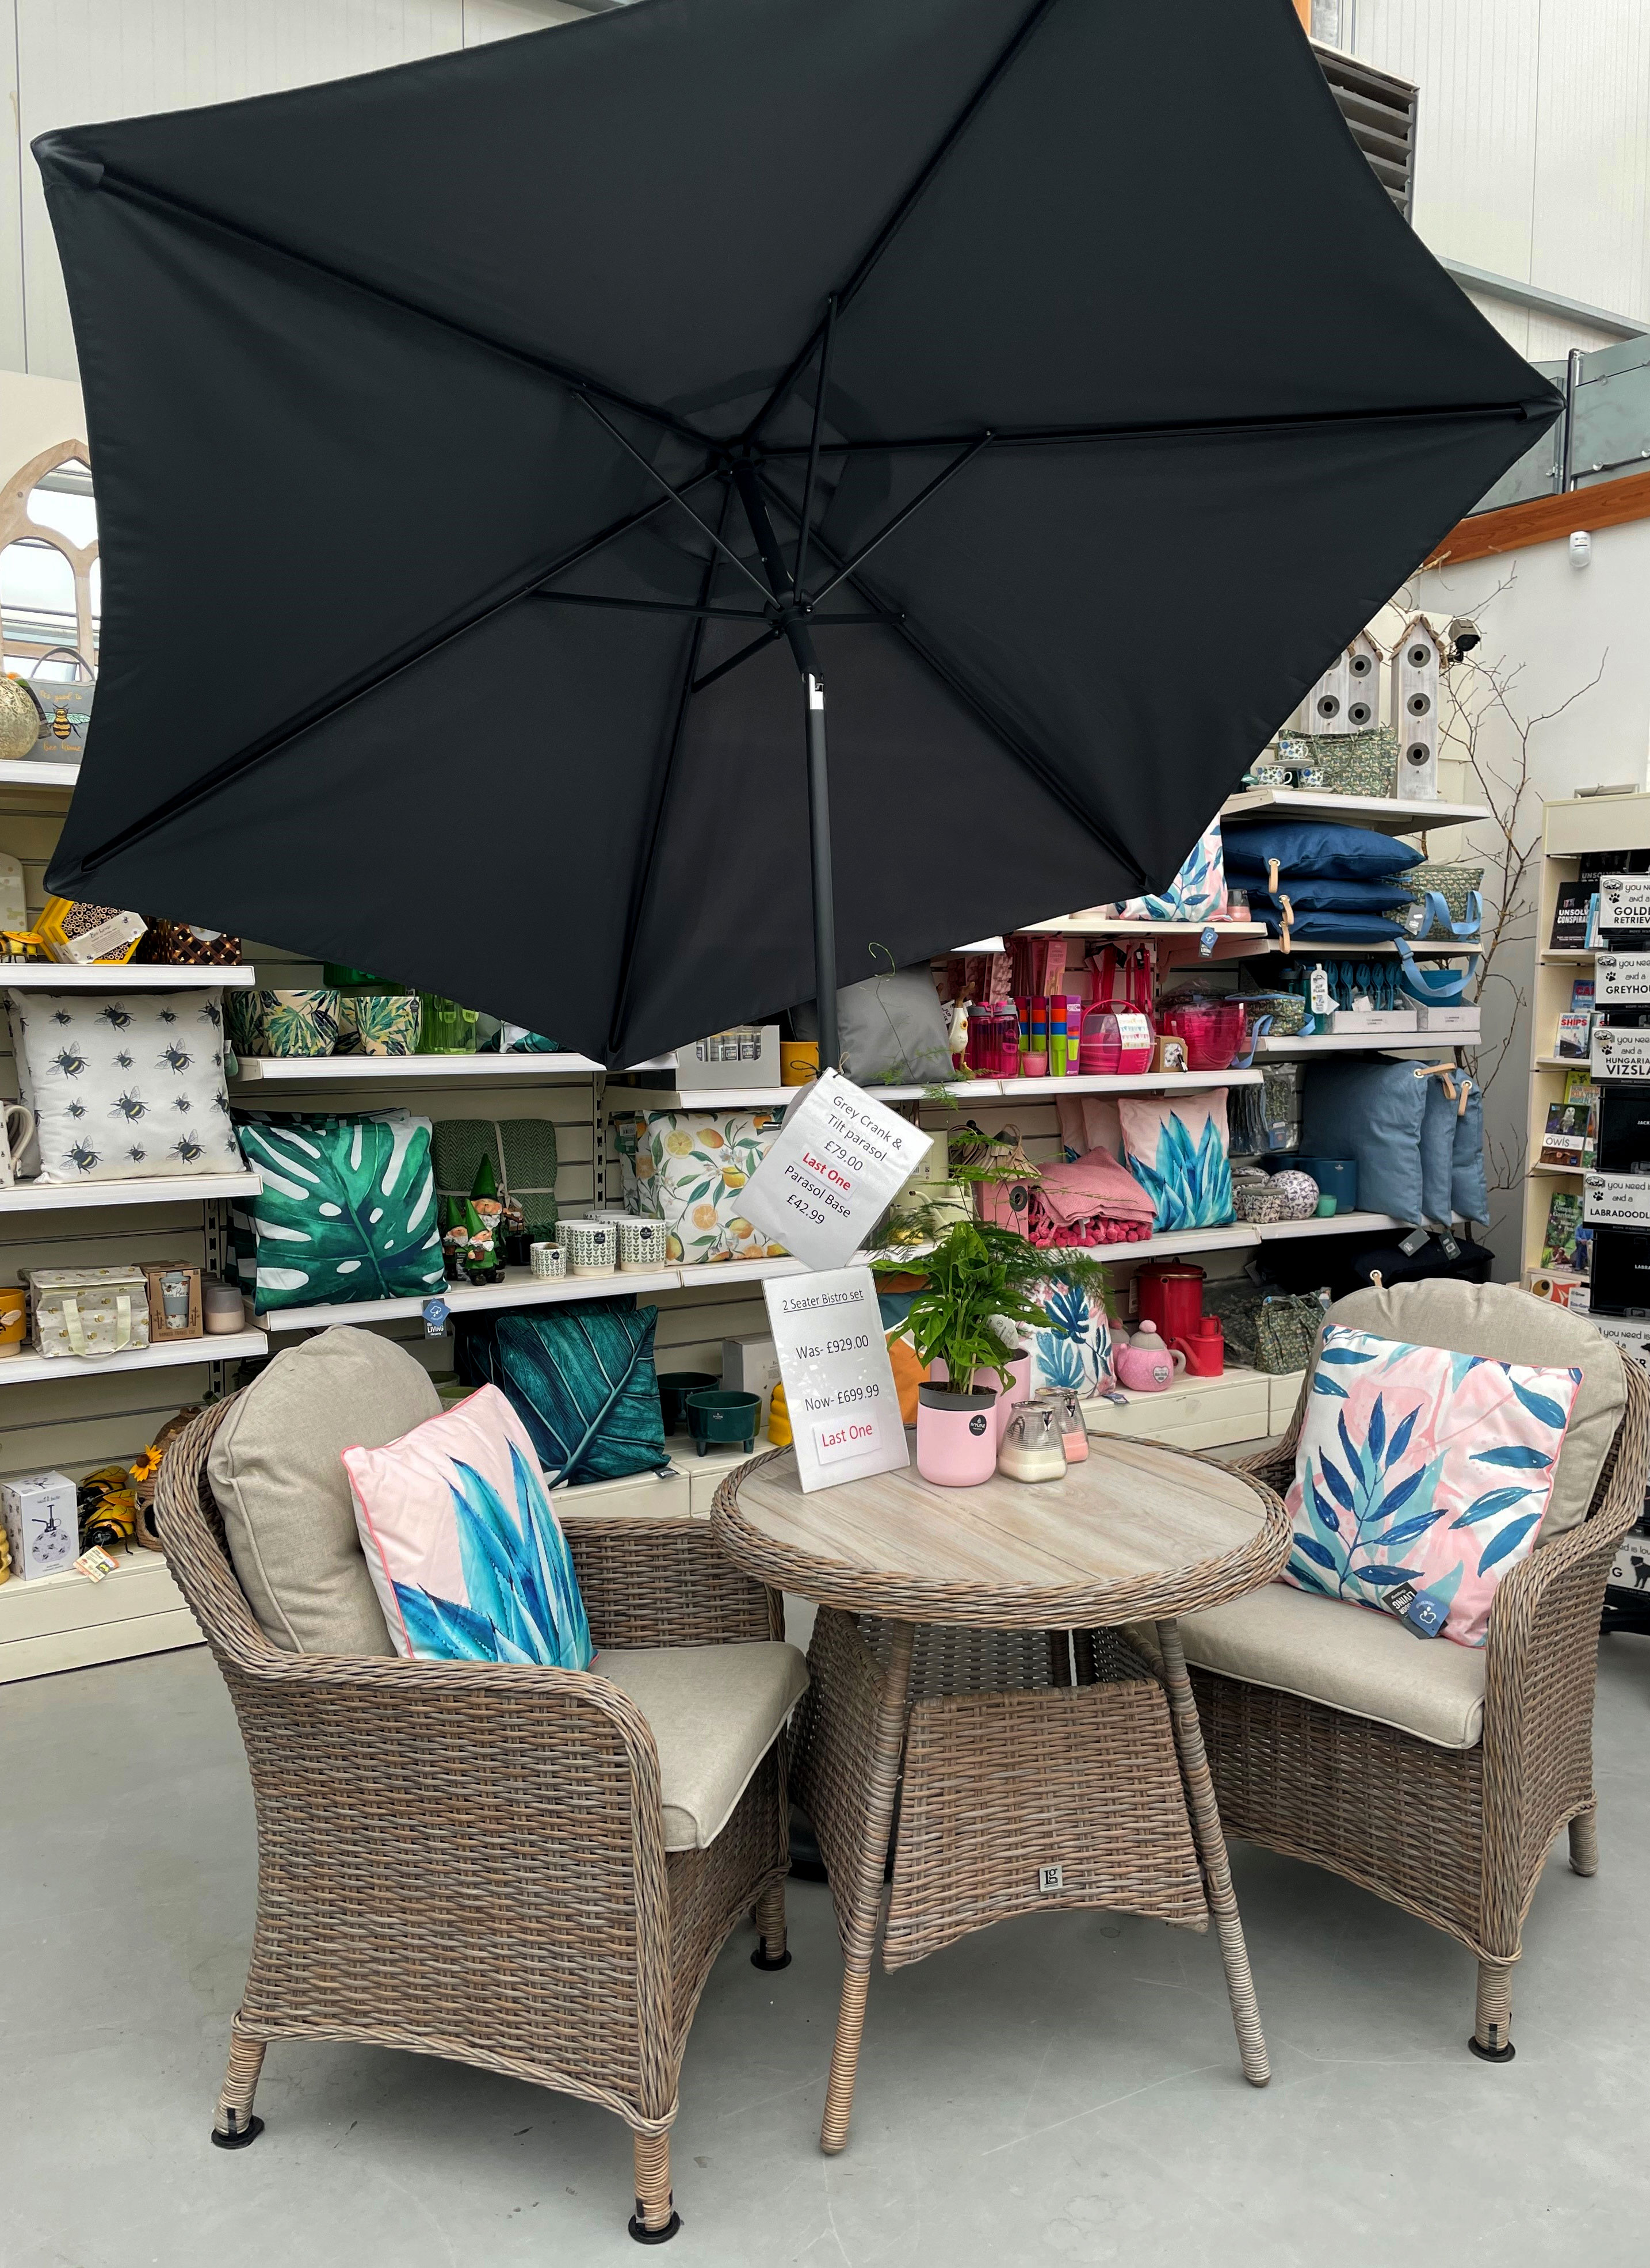 Garden furniture bistro set with parasol